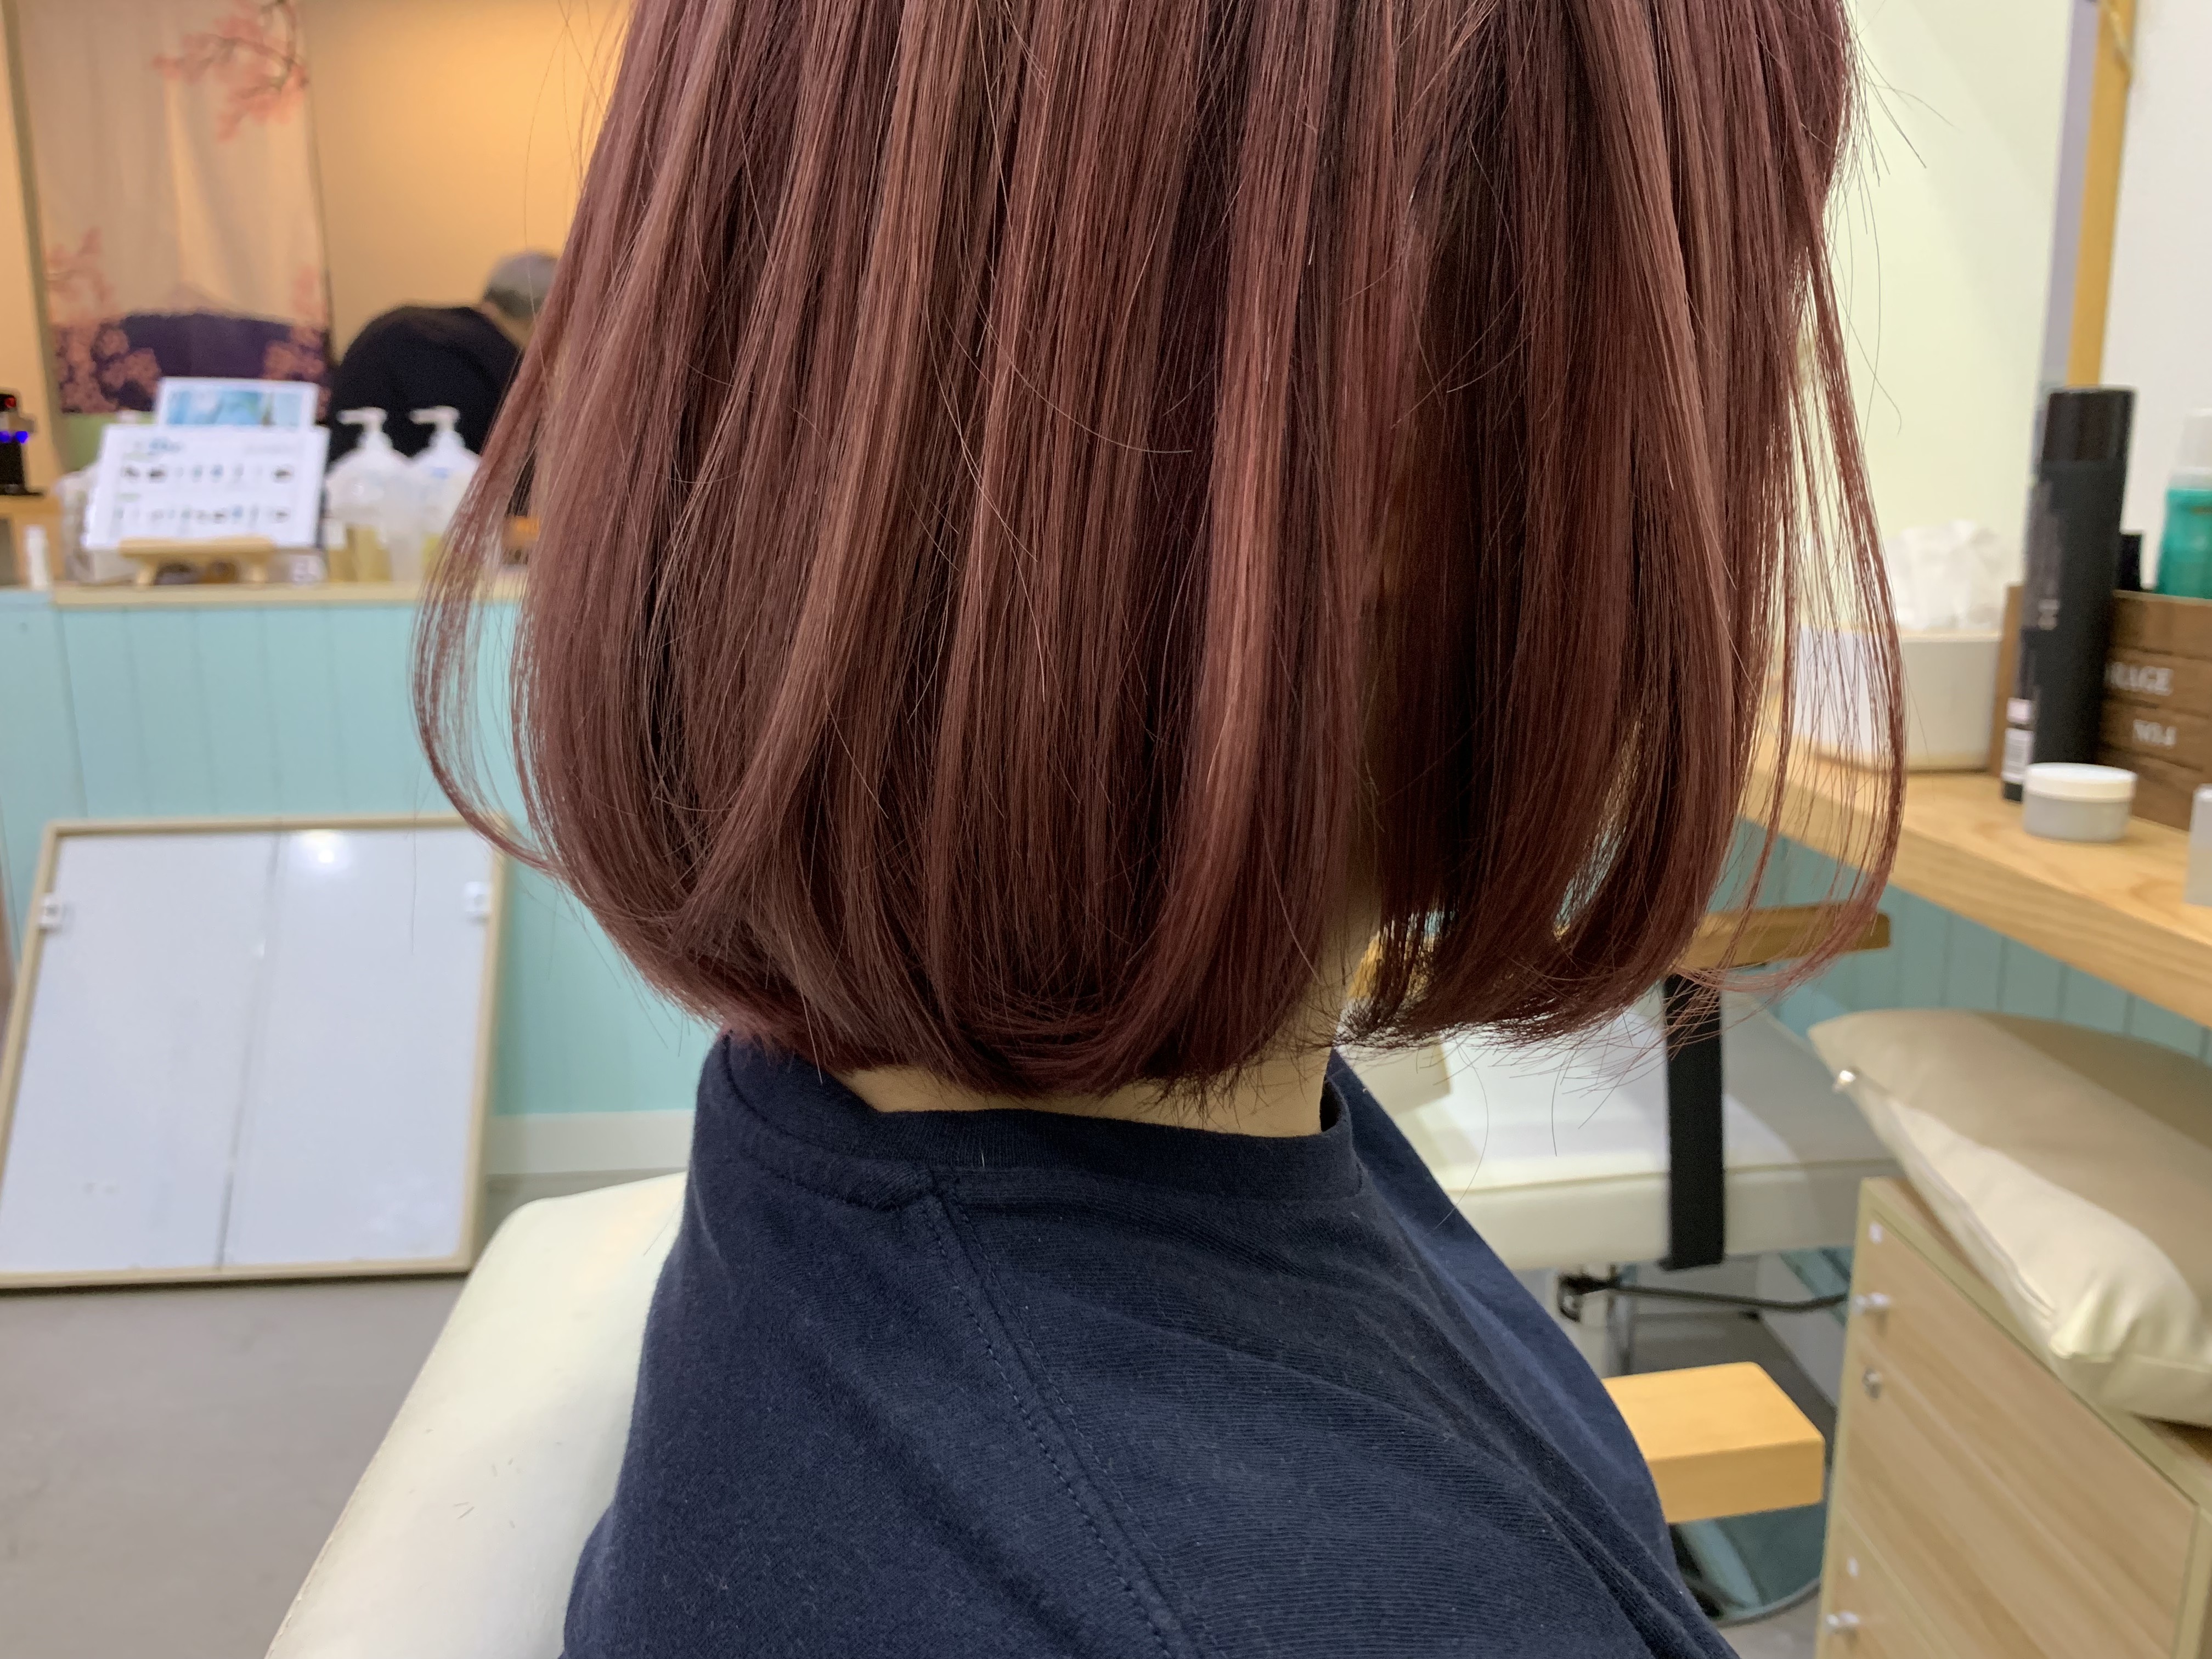 髮型作品参考:日本草莓色系